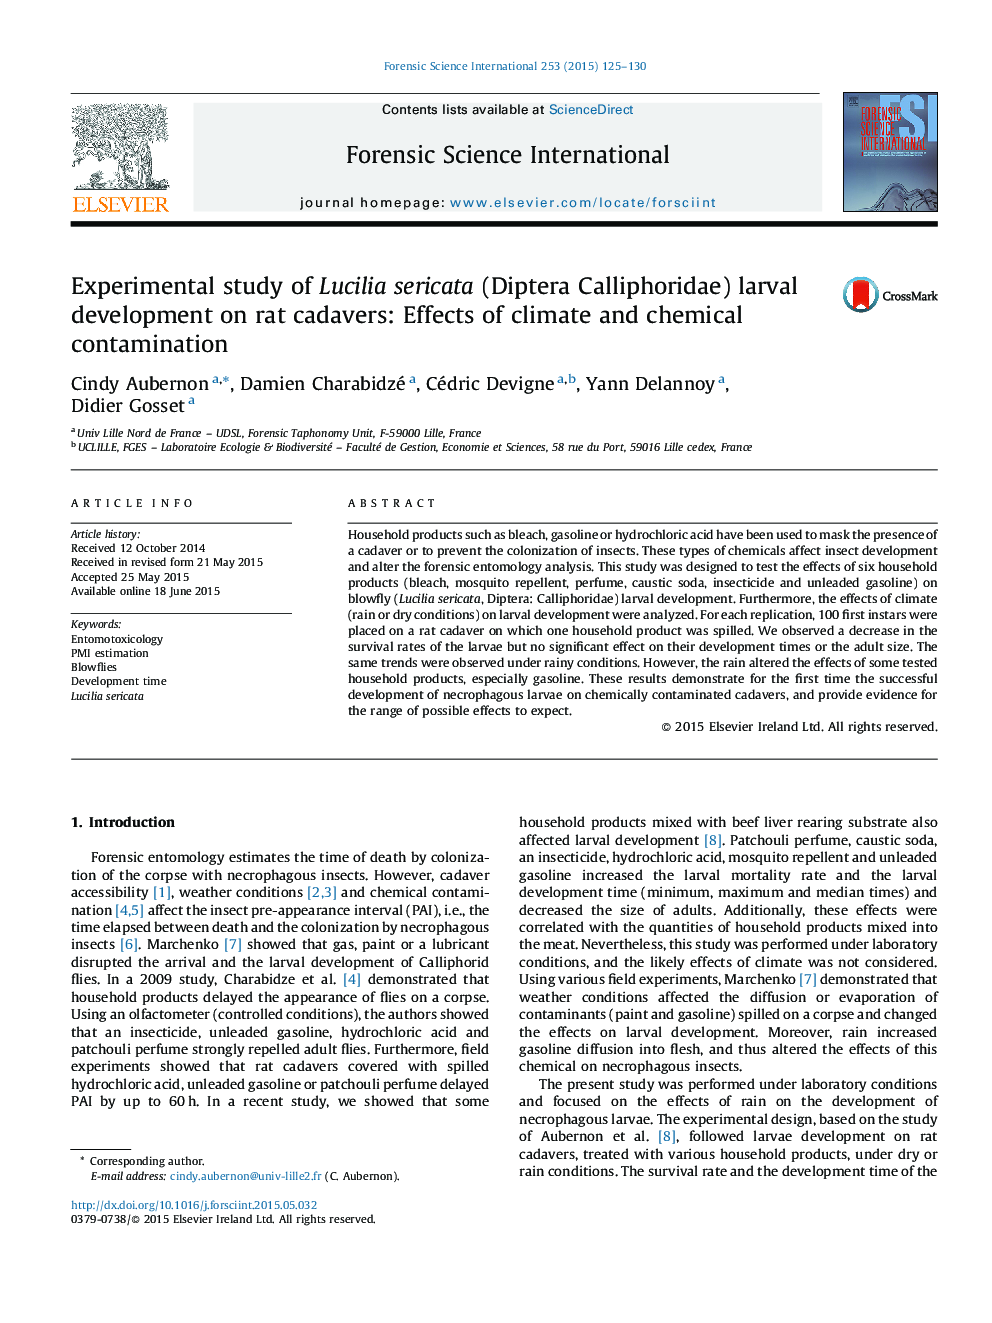 بررسی تجربی رشد لاروال Lucilia sericata (Diptera Calliphoridae) در موش صحرایی: اثرات آب و هوا و آلودگی شیمیایی